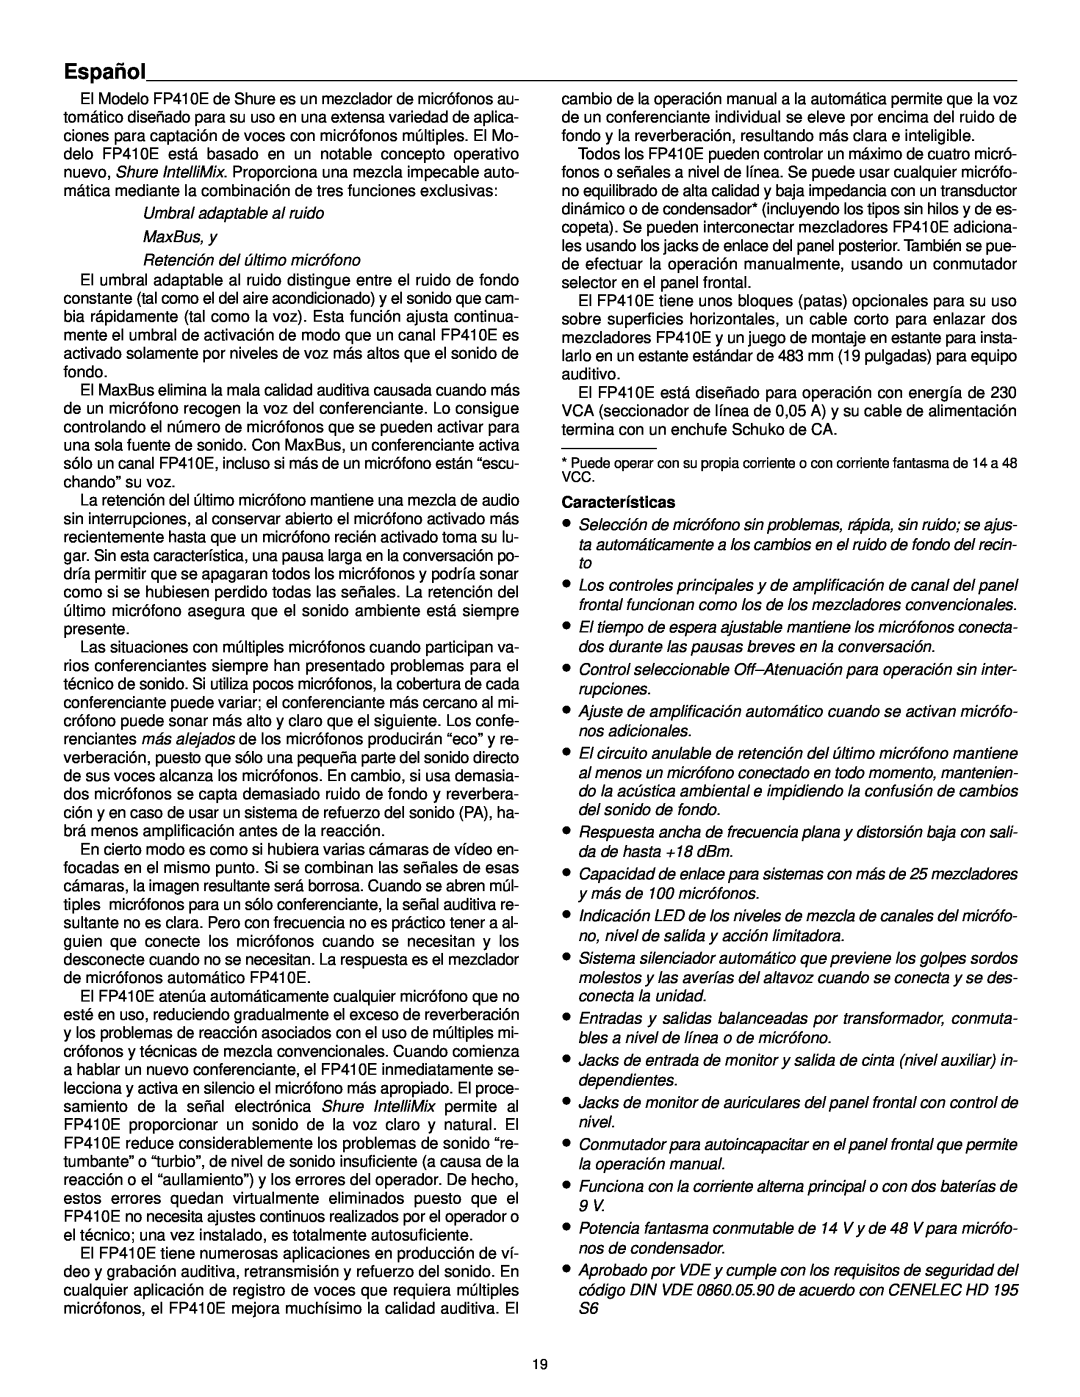 Shure FP410 manual Español, Características 